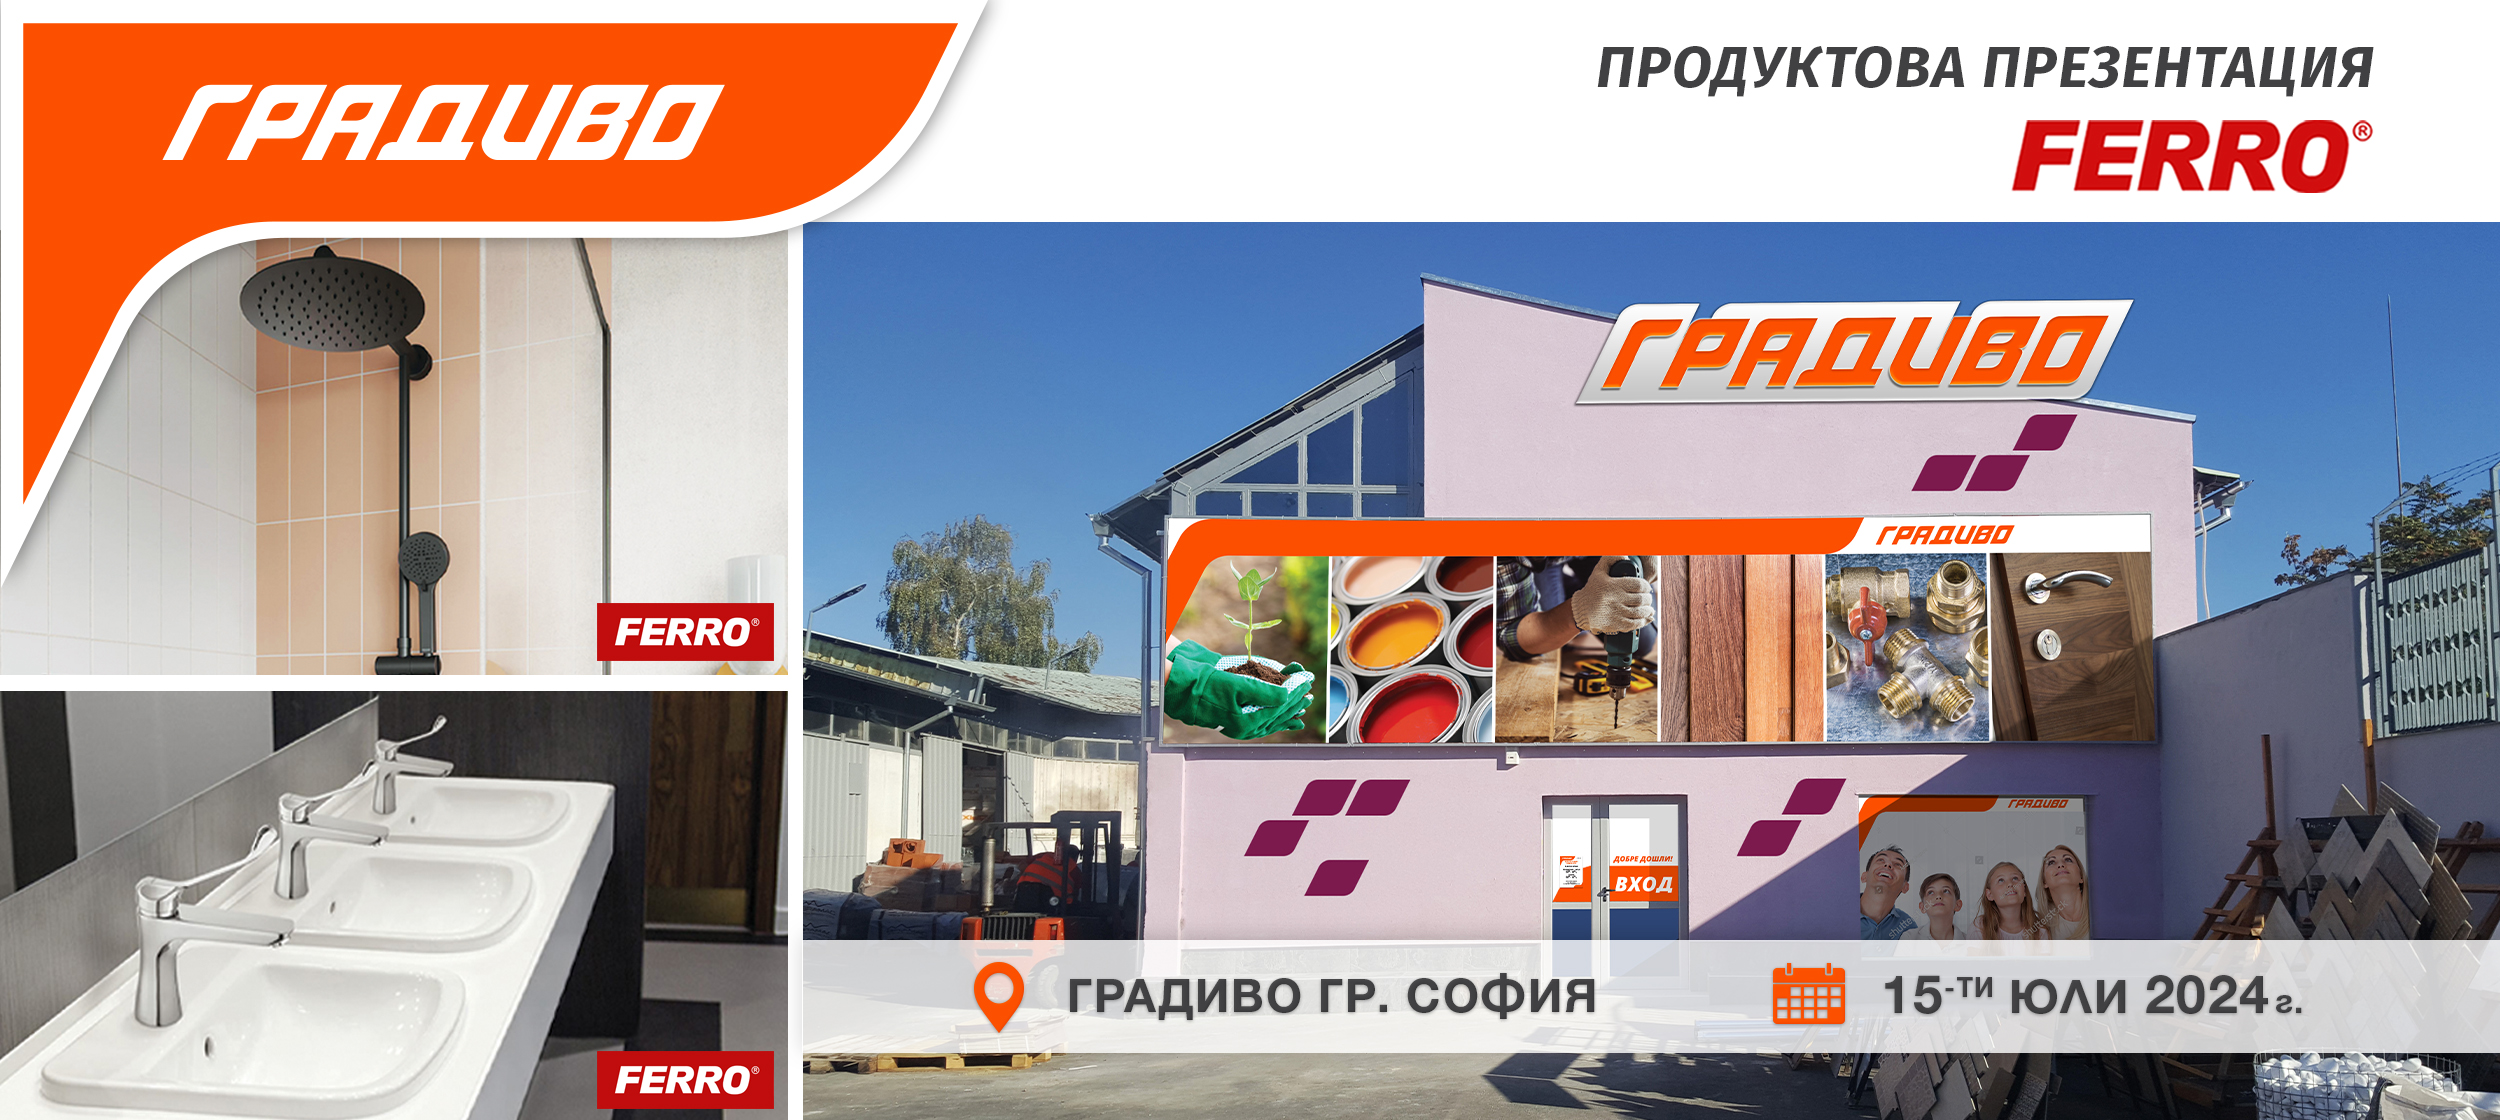 Продуктова презентация на продукти Ferro в строителен маркет ГРАДИВО София